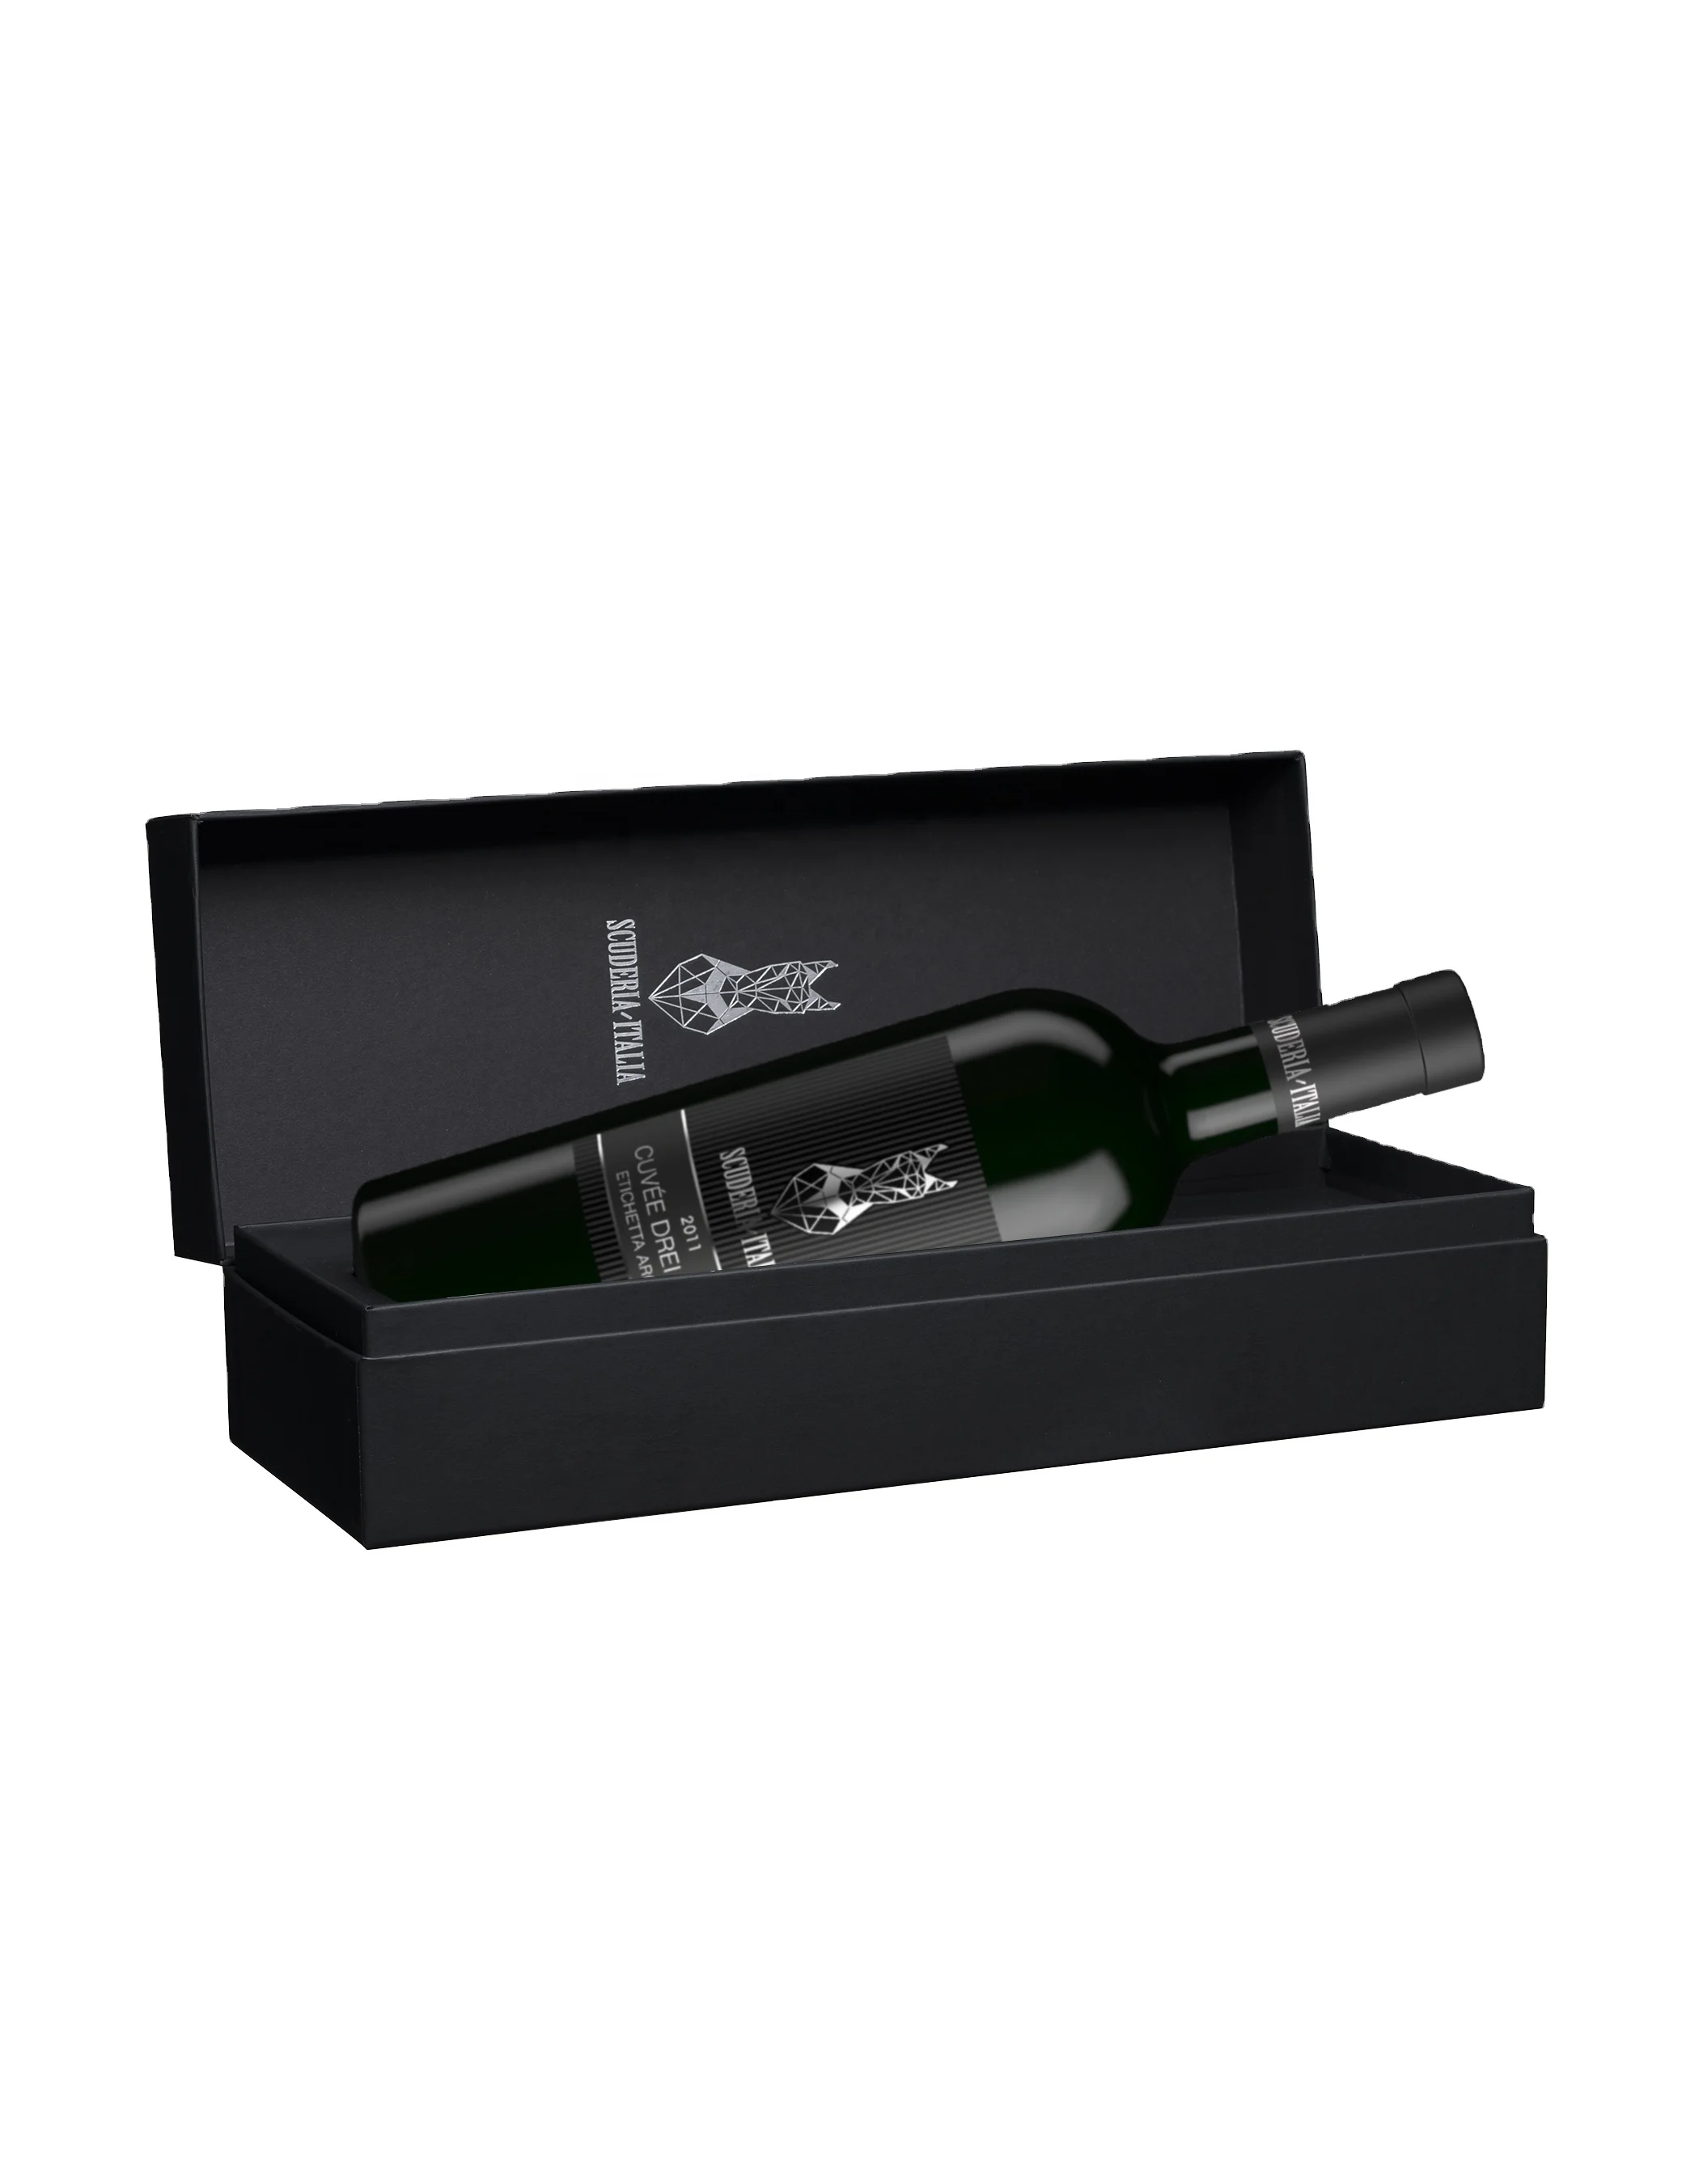 CUVEE DREI DONA ETICHETTA ARGENTO 2011 Scuderia Italia 0.75L 14.5% Prestigious Italian Red Wine in its Luxury Box